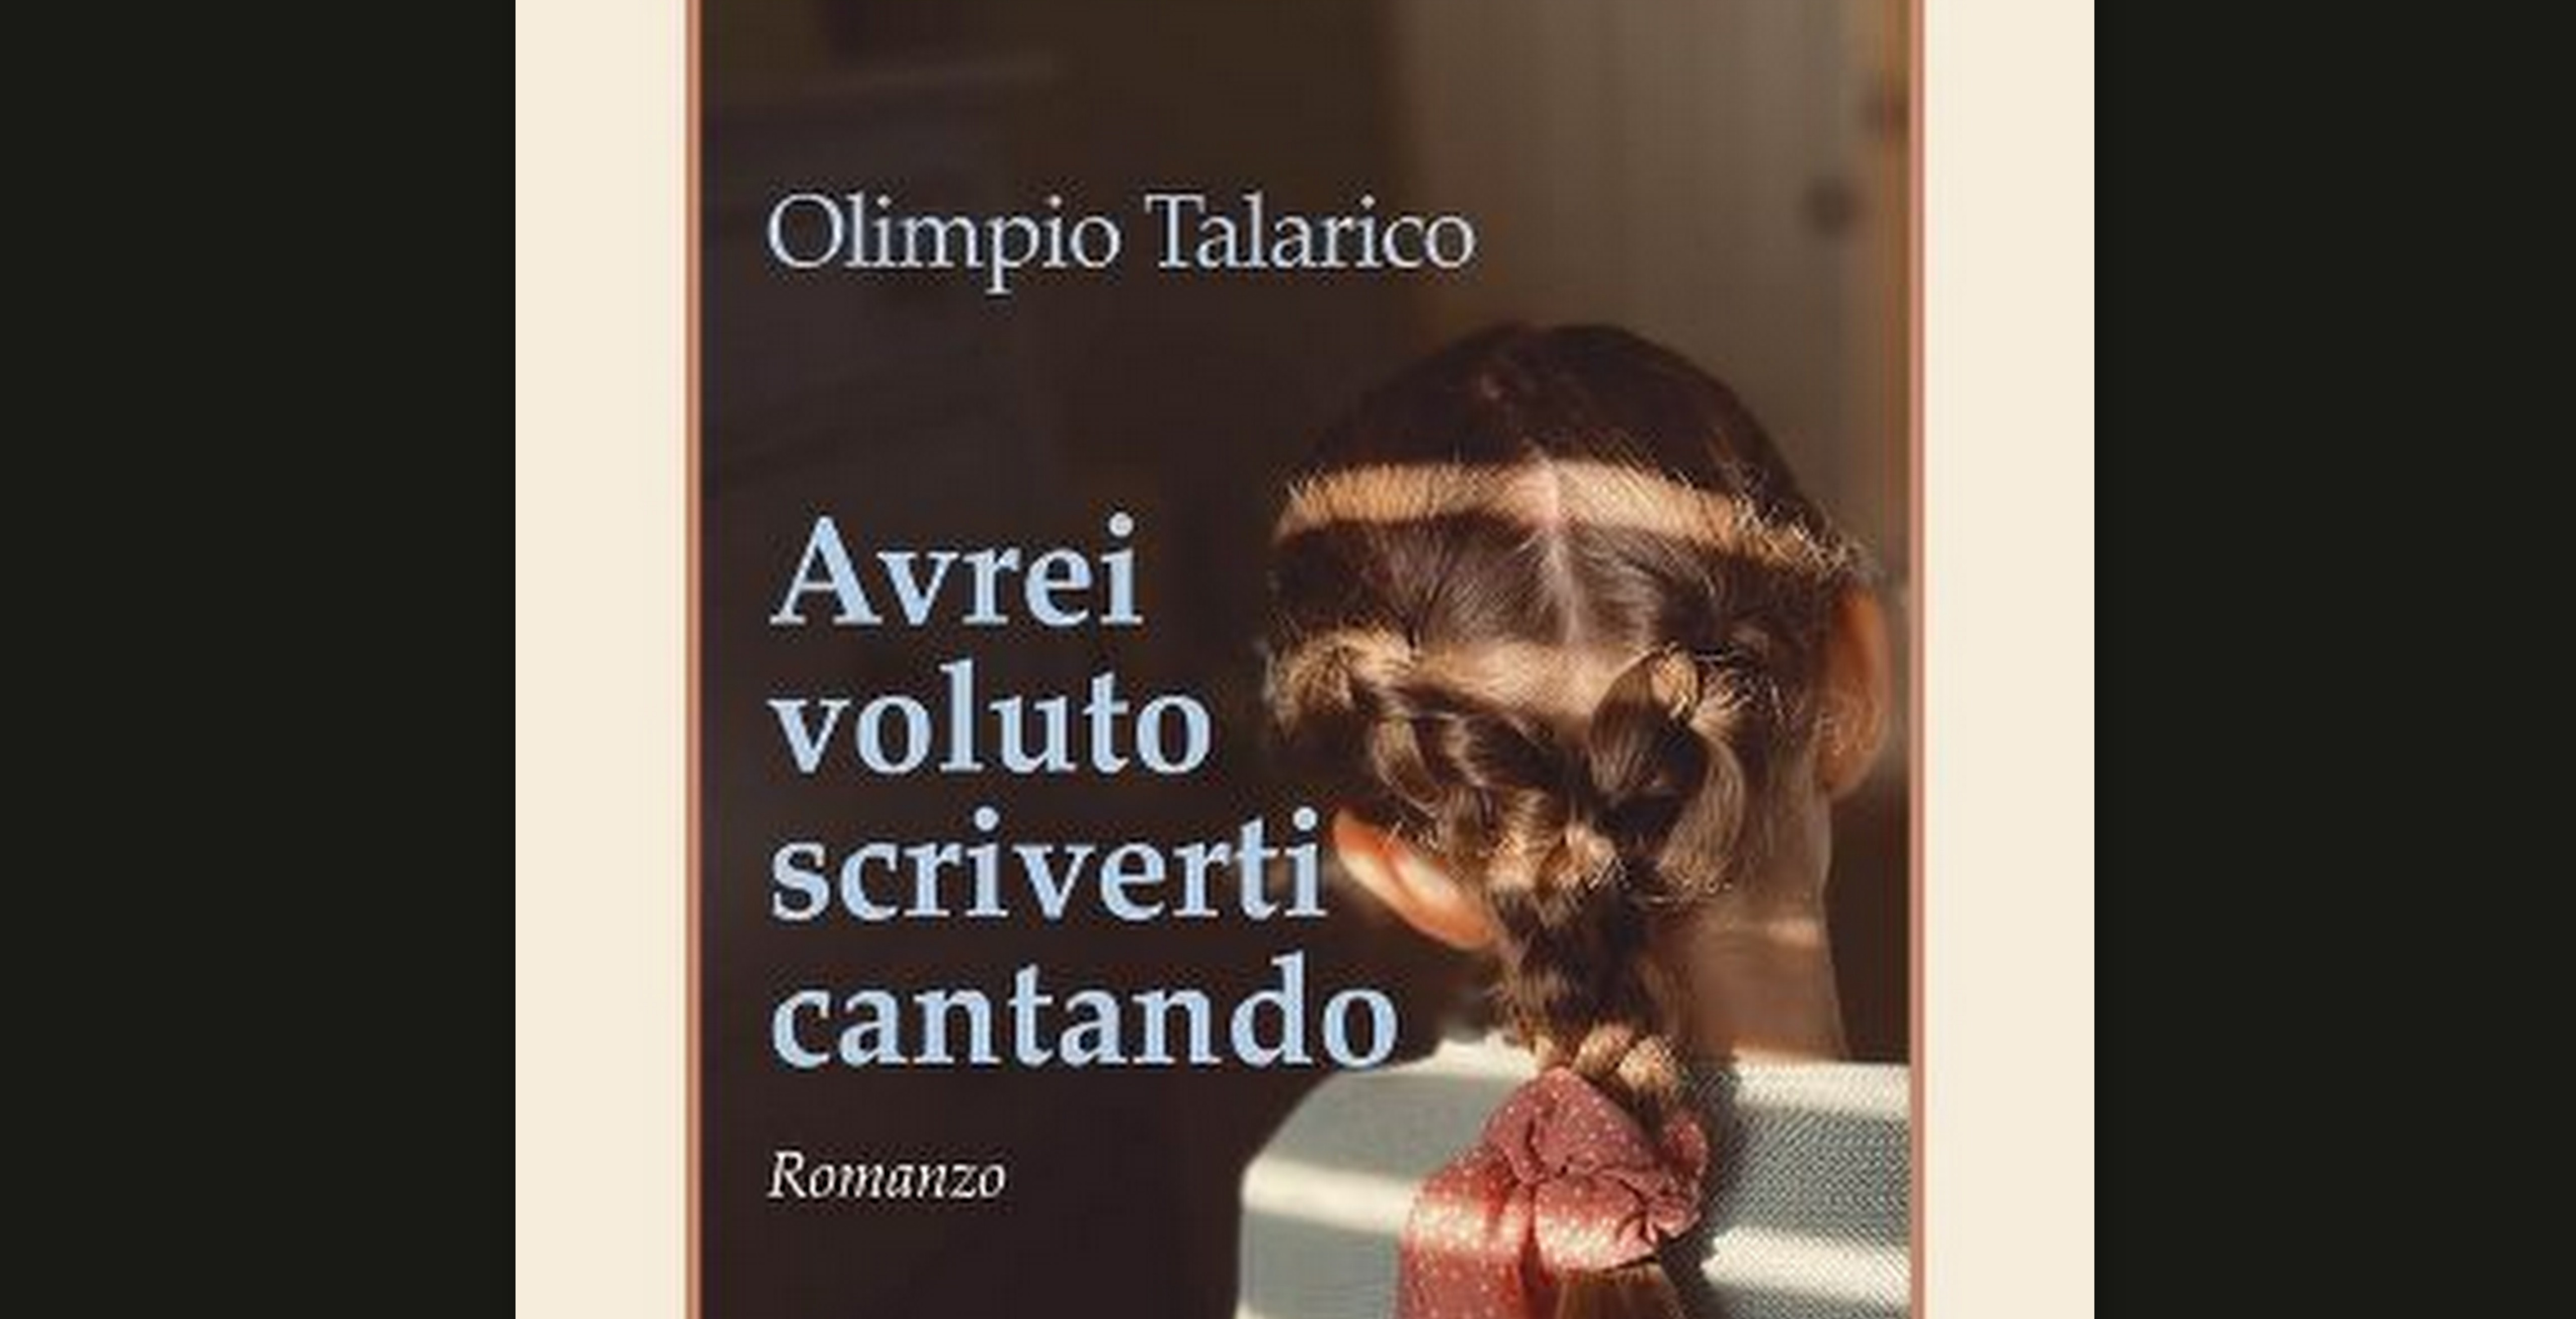 Avrei voluto scriverti cantando libro di Olimpio Talarico